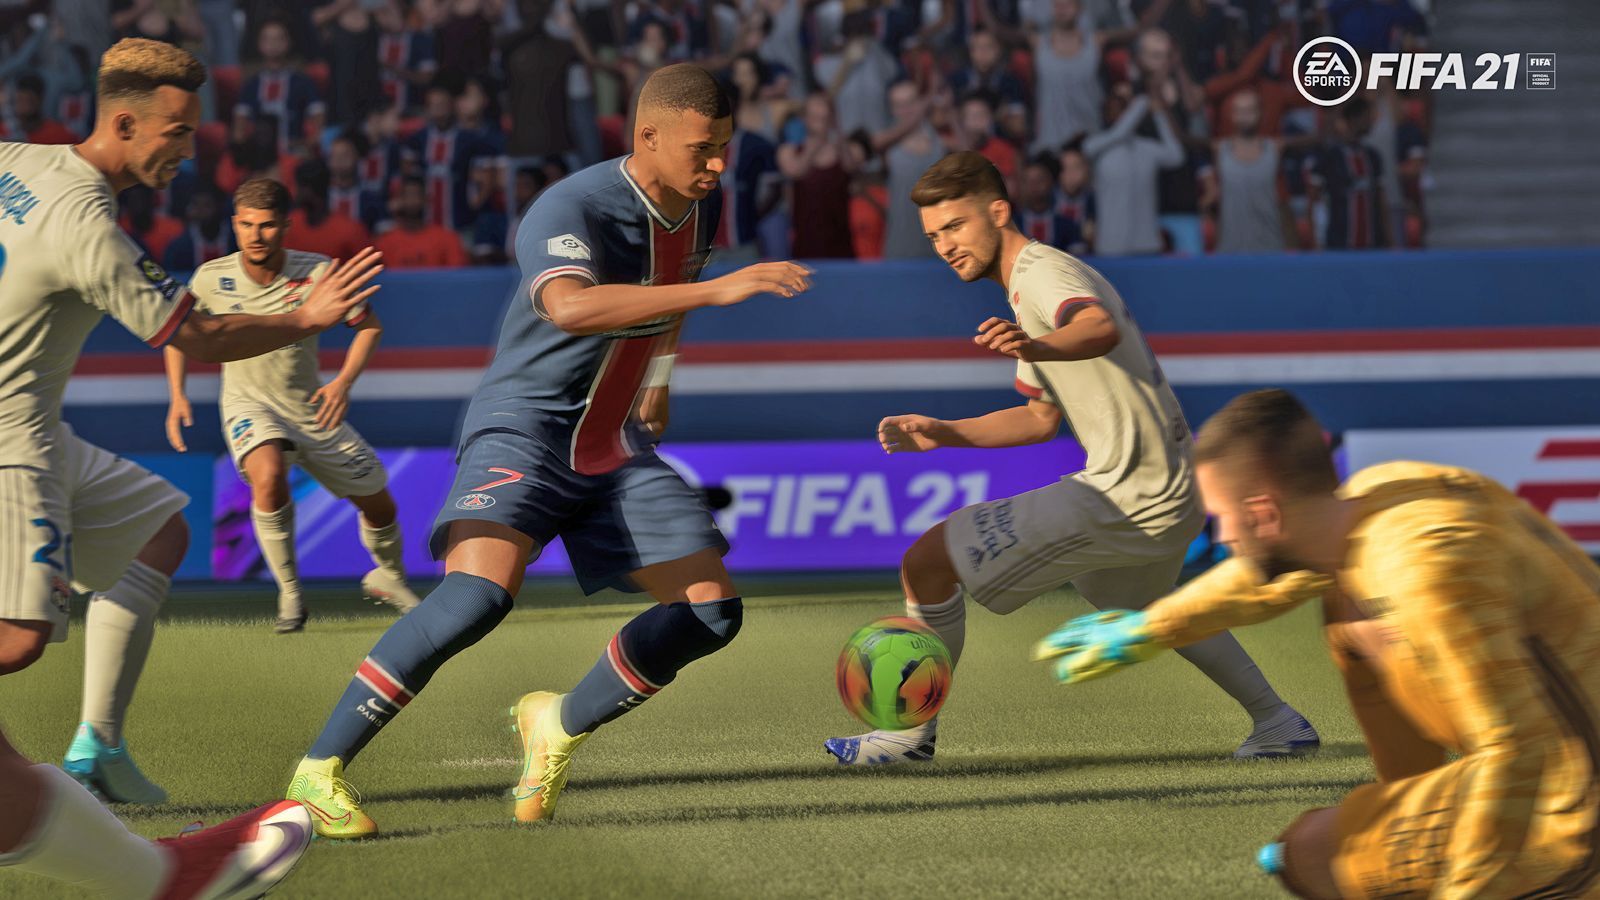 
                <strong>FIFA 21: Alle Gameplay-Neuerungen im Überblick</strong><br>
                Agile Dribbling: Eine wesentliche Neuerung ist das "Agile Dribbling". Damit wird es möglich sein, enge Ballführung und schnelle Richtungswechsel auf engstem Raum zu ermöglichen. So können selbst aus ausweglosen Situationen, wie Zweikämpfen an der Eckfahne, noch Tormöglichkeiten entstehen.
              